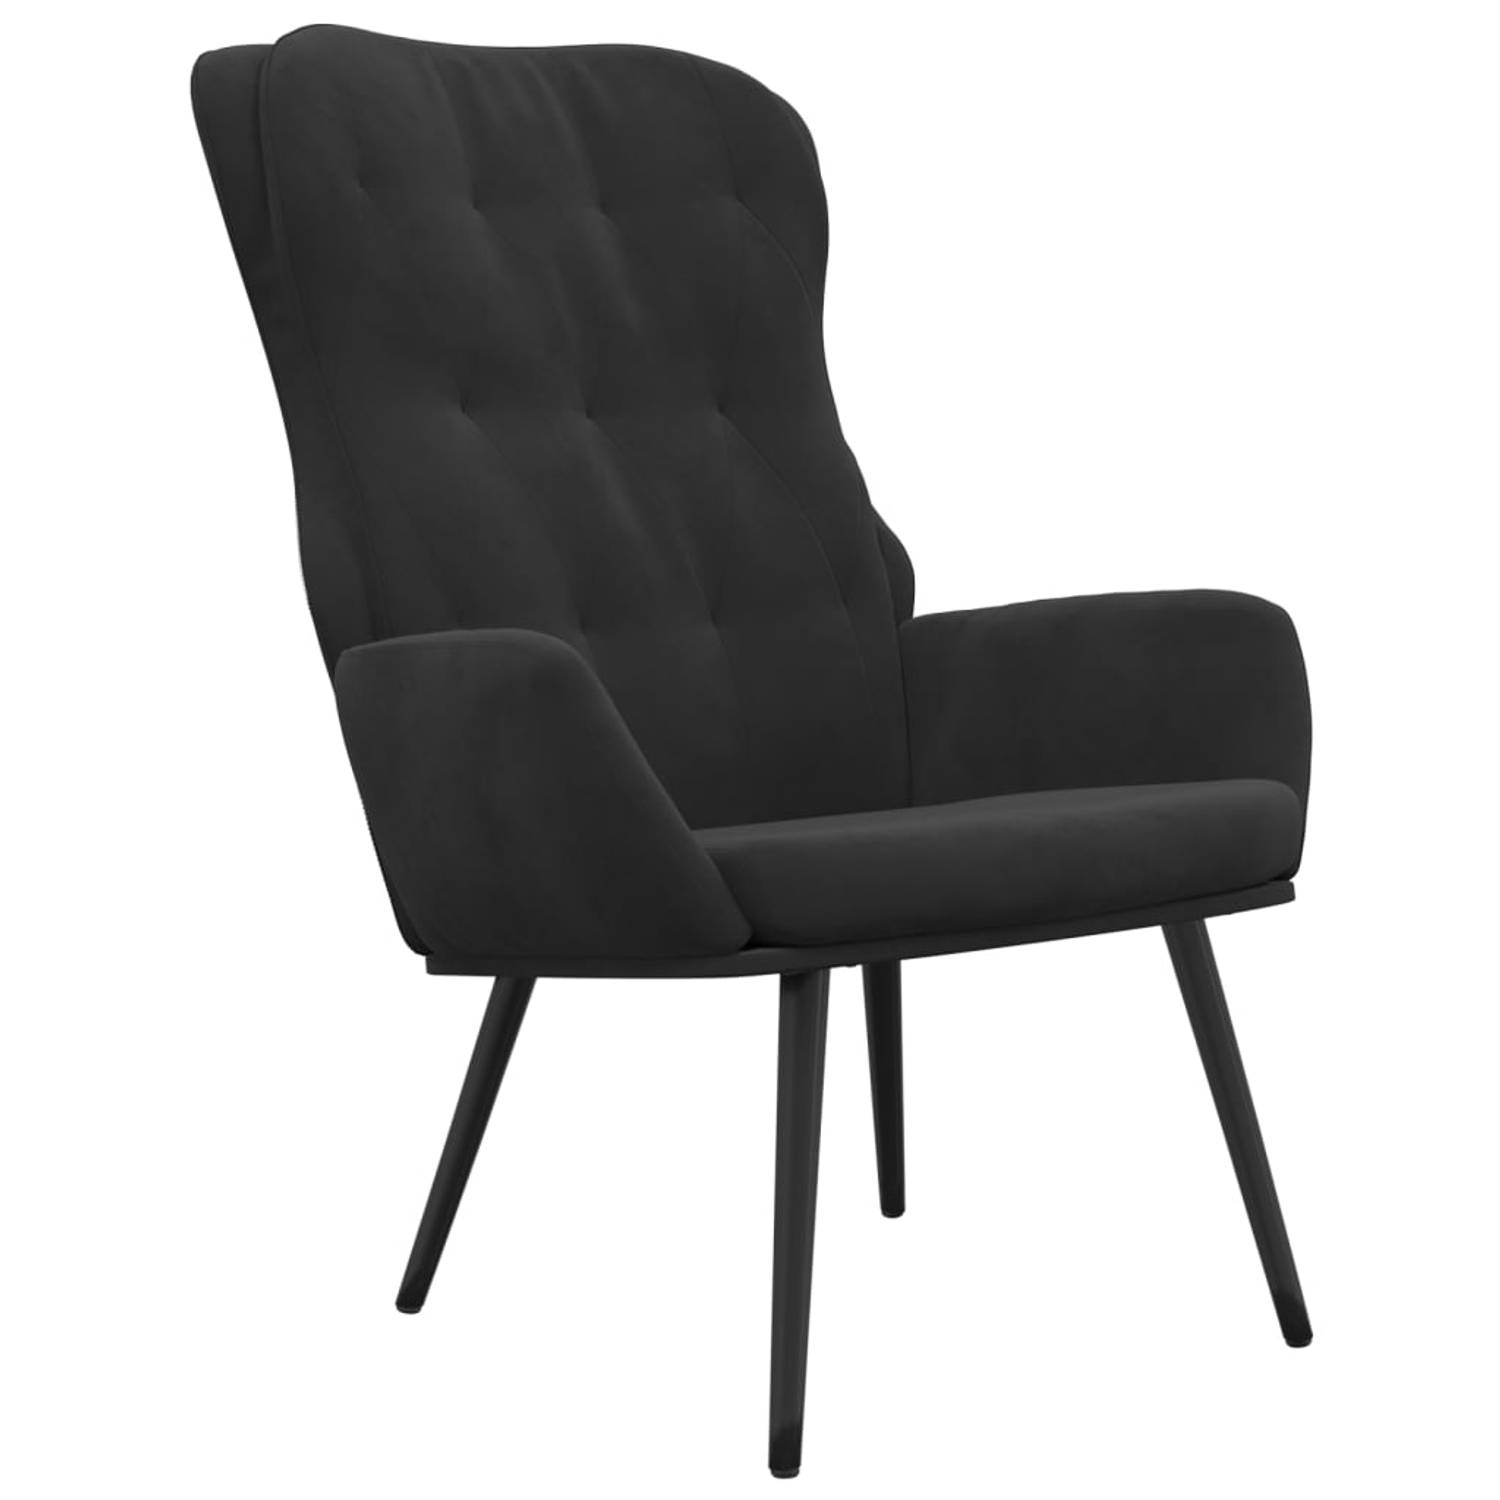 The Living Store Relaxstoel Velvet Zwart - 70x77x98 cm - Hoogwaardig materiaal en stevig frame